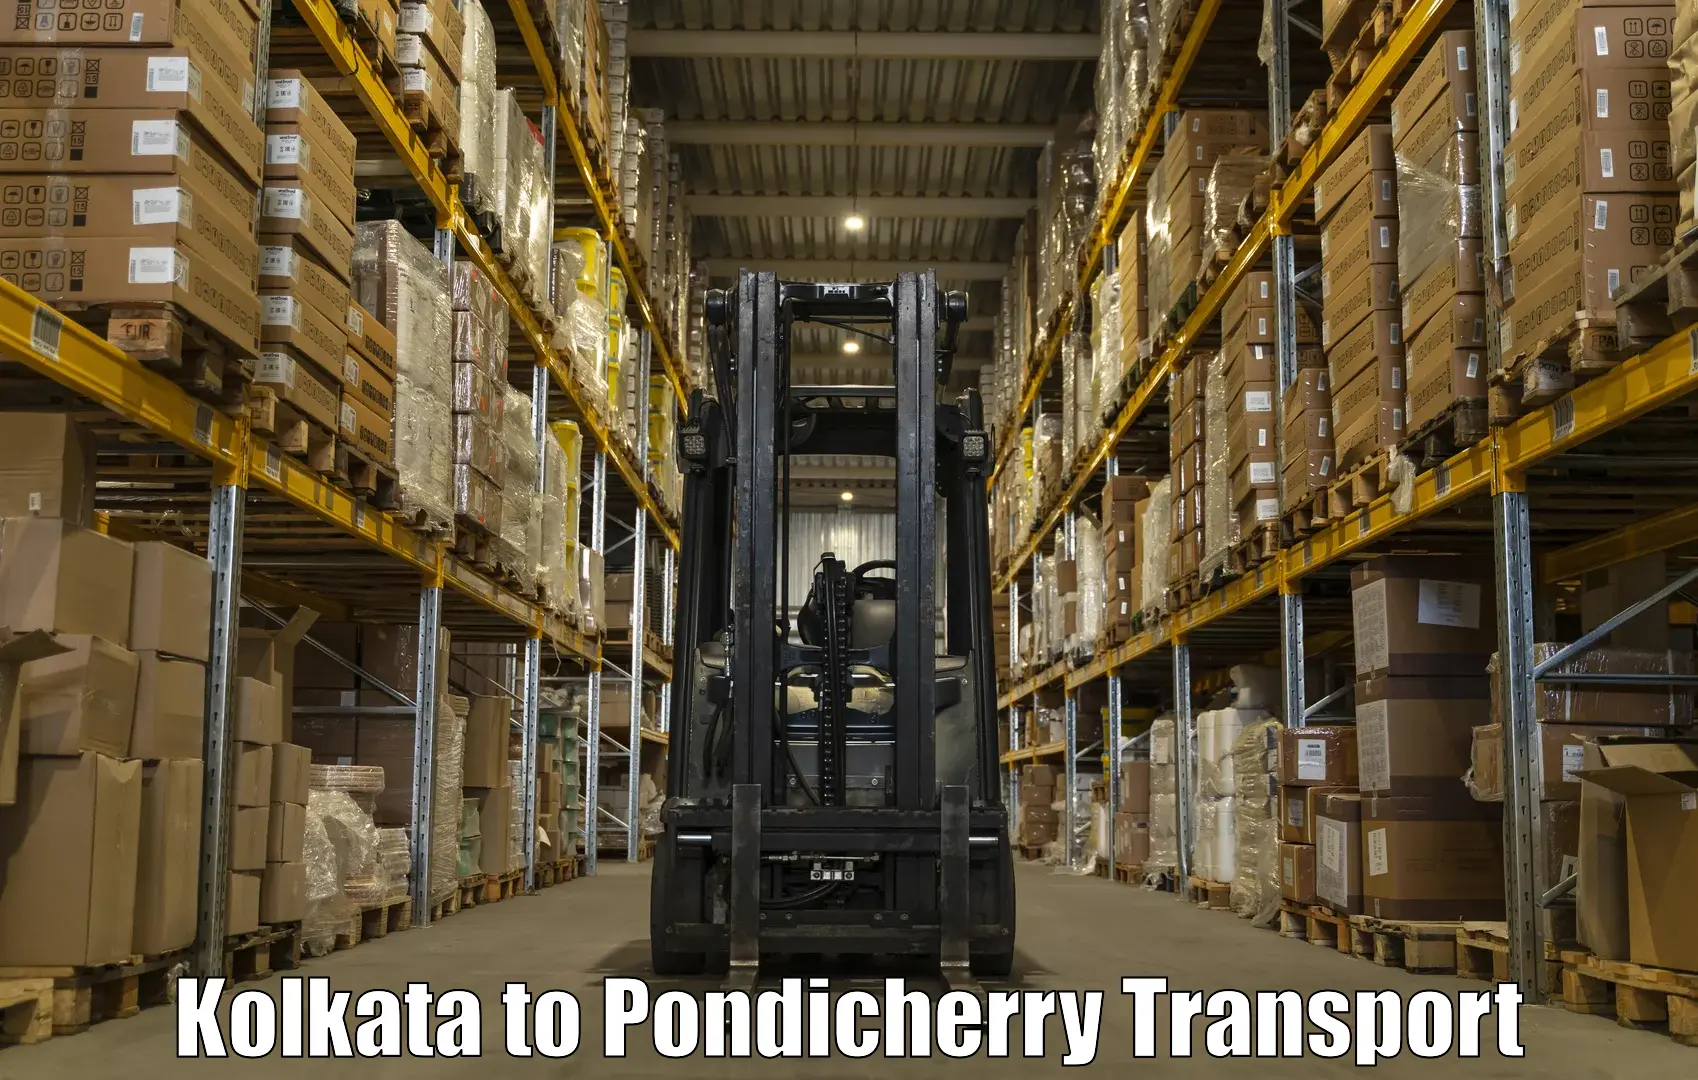 International cargo transportation services Kolkata to Pondicherry University